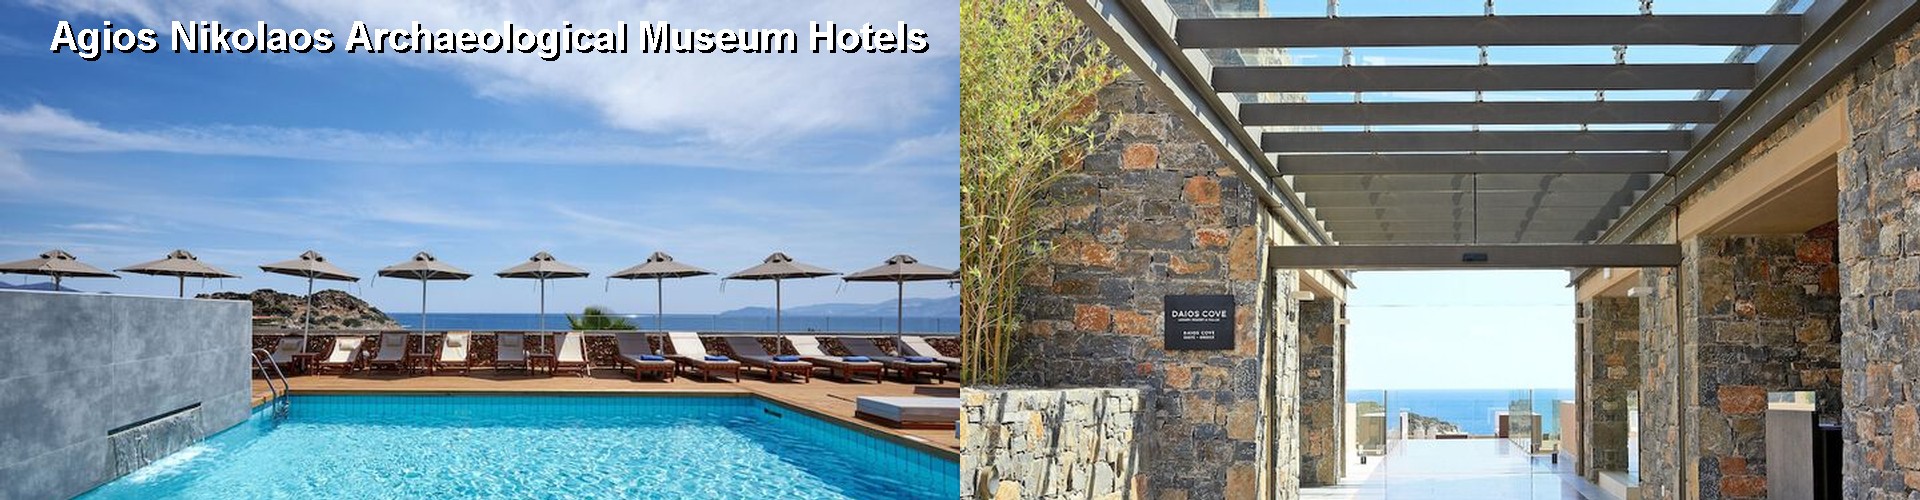 5 Best Hotels near Agios Nikolaos Archaeological Museum